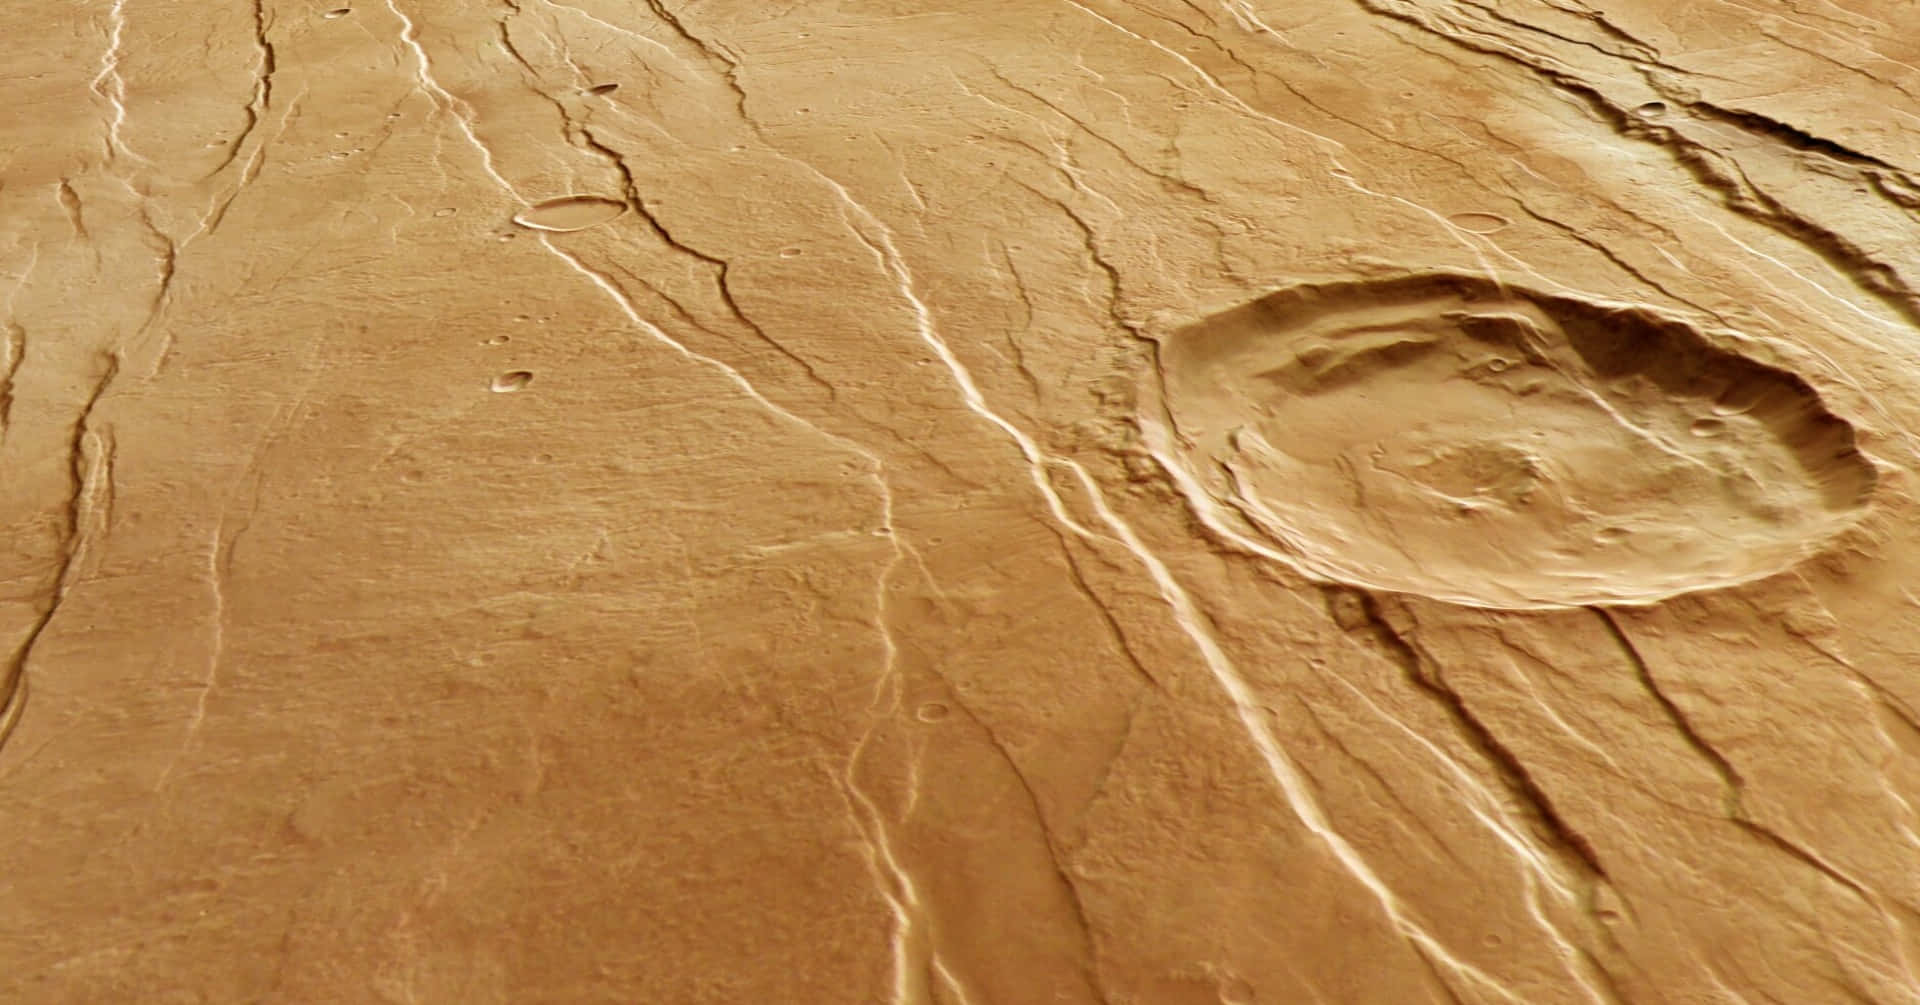 The Red planet Mars, showcasing its unique landscape